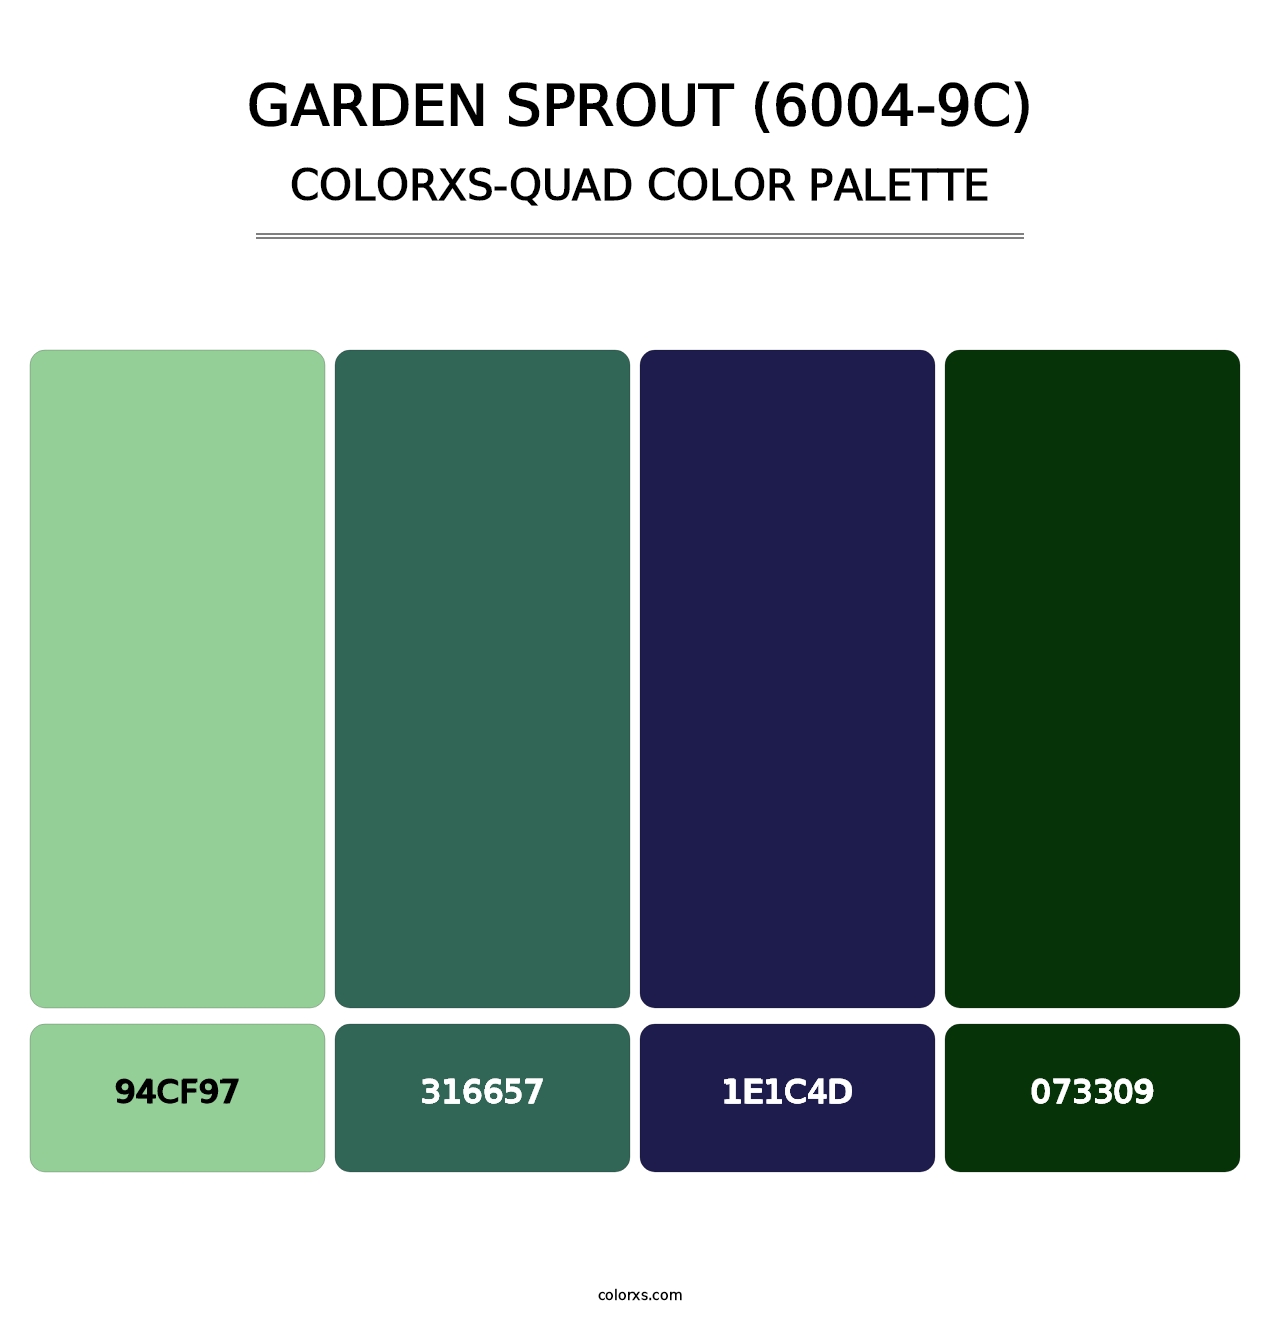 Garden Sprout (6004-9C) - Colorxs Quad Palette